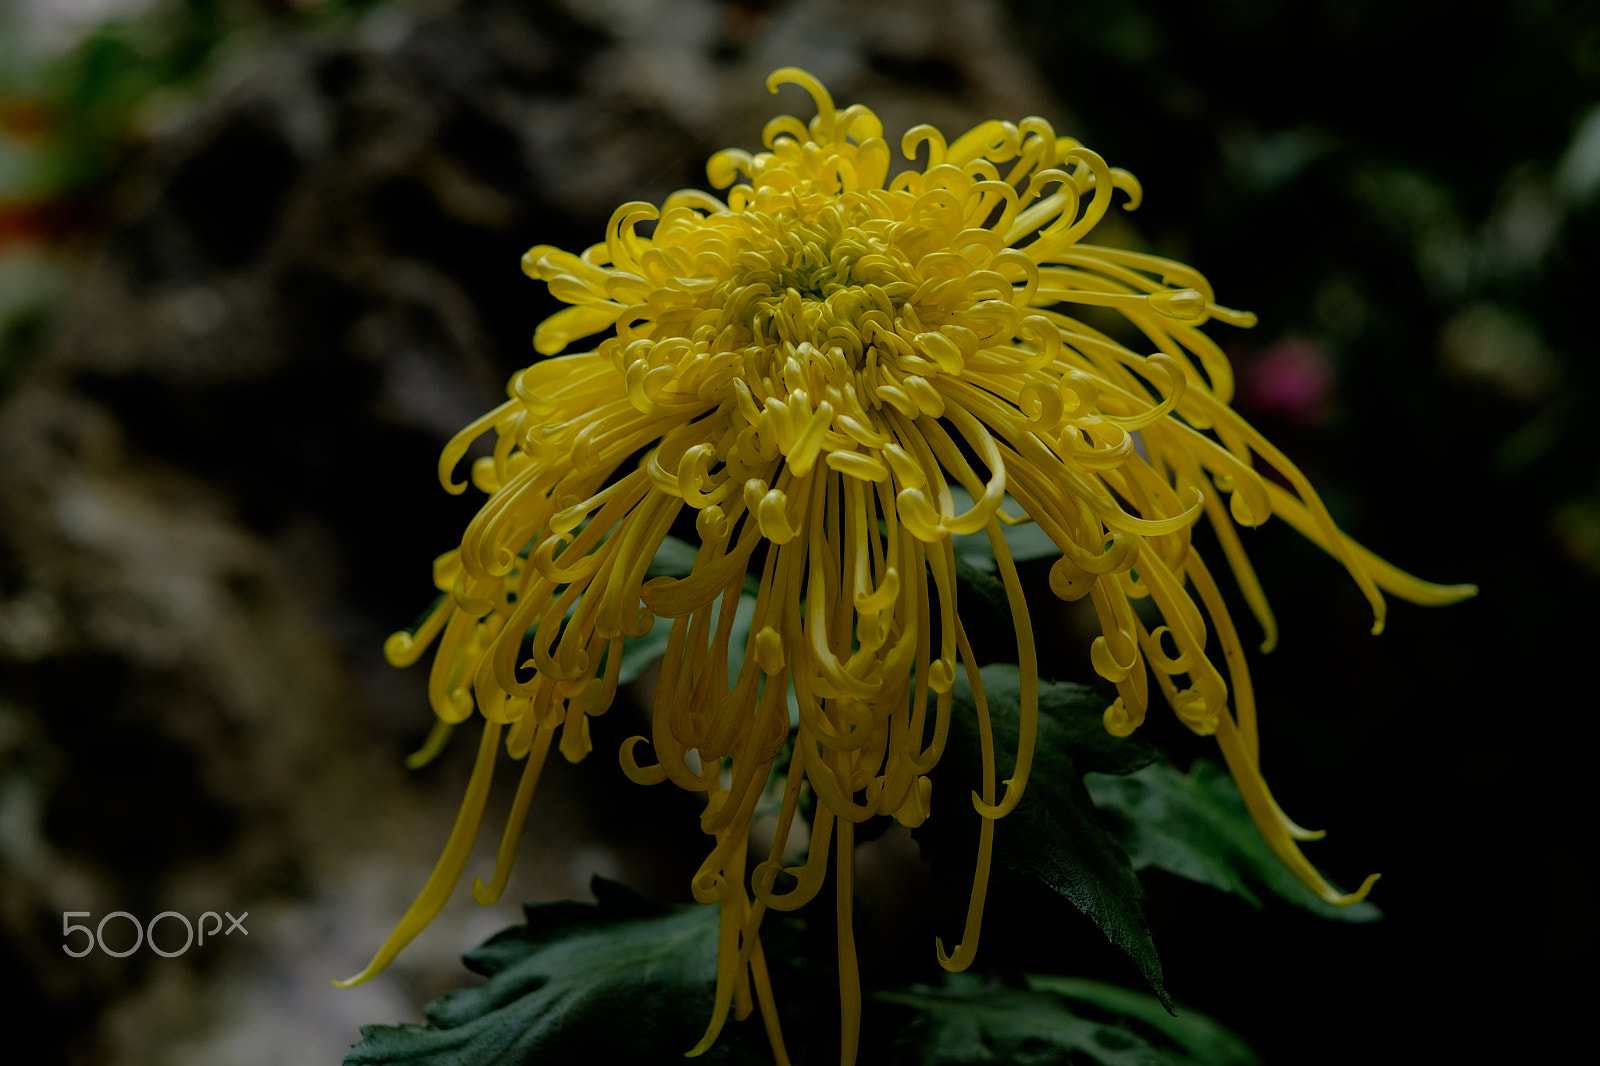 Fujifilm X-T1 sample photo. Chrysanthemum (yellow) photography